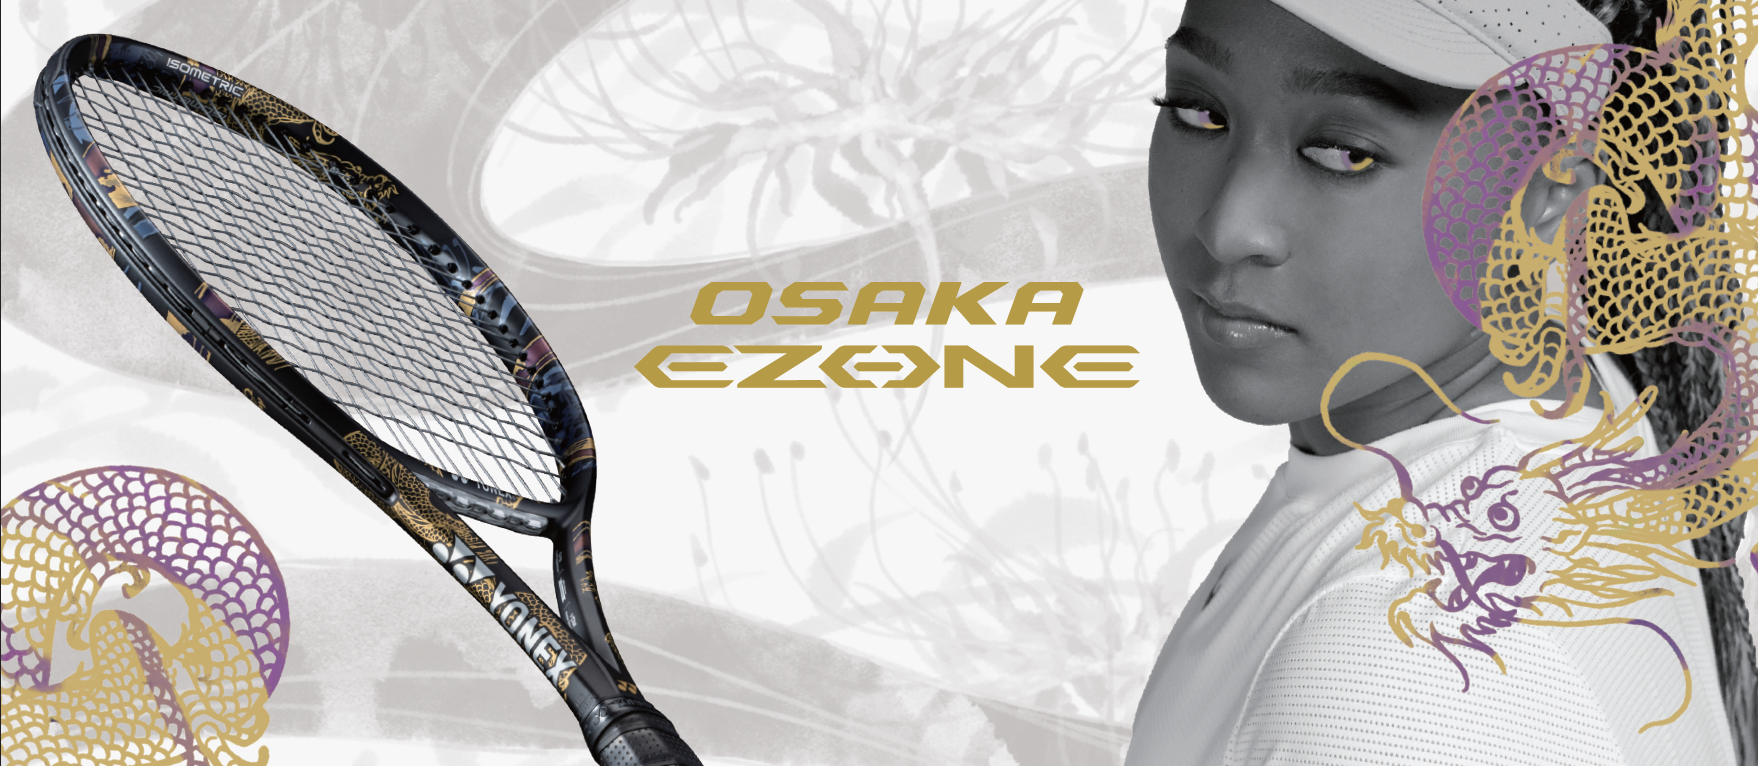 大坂なおみと姉のまりさんがデザインをプロデュース テニスラケット Osaka Ezone 22年9月上旬より発売 Newscast